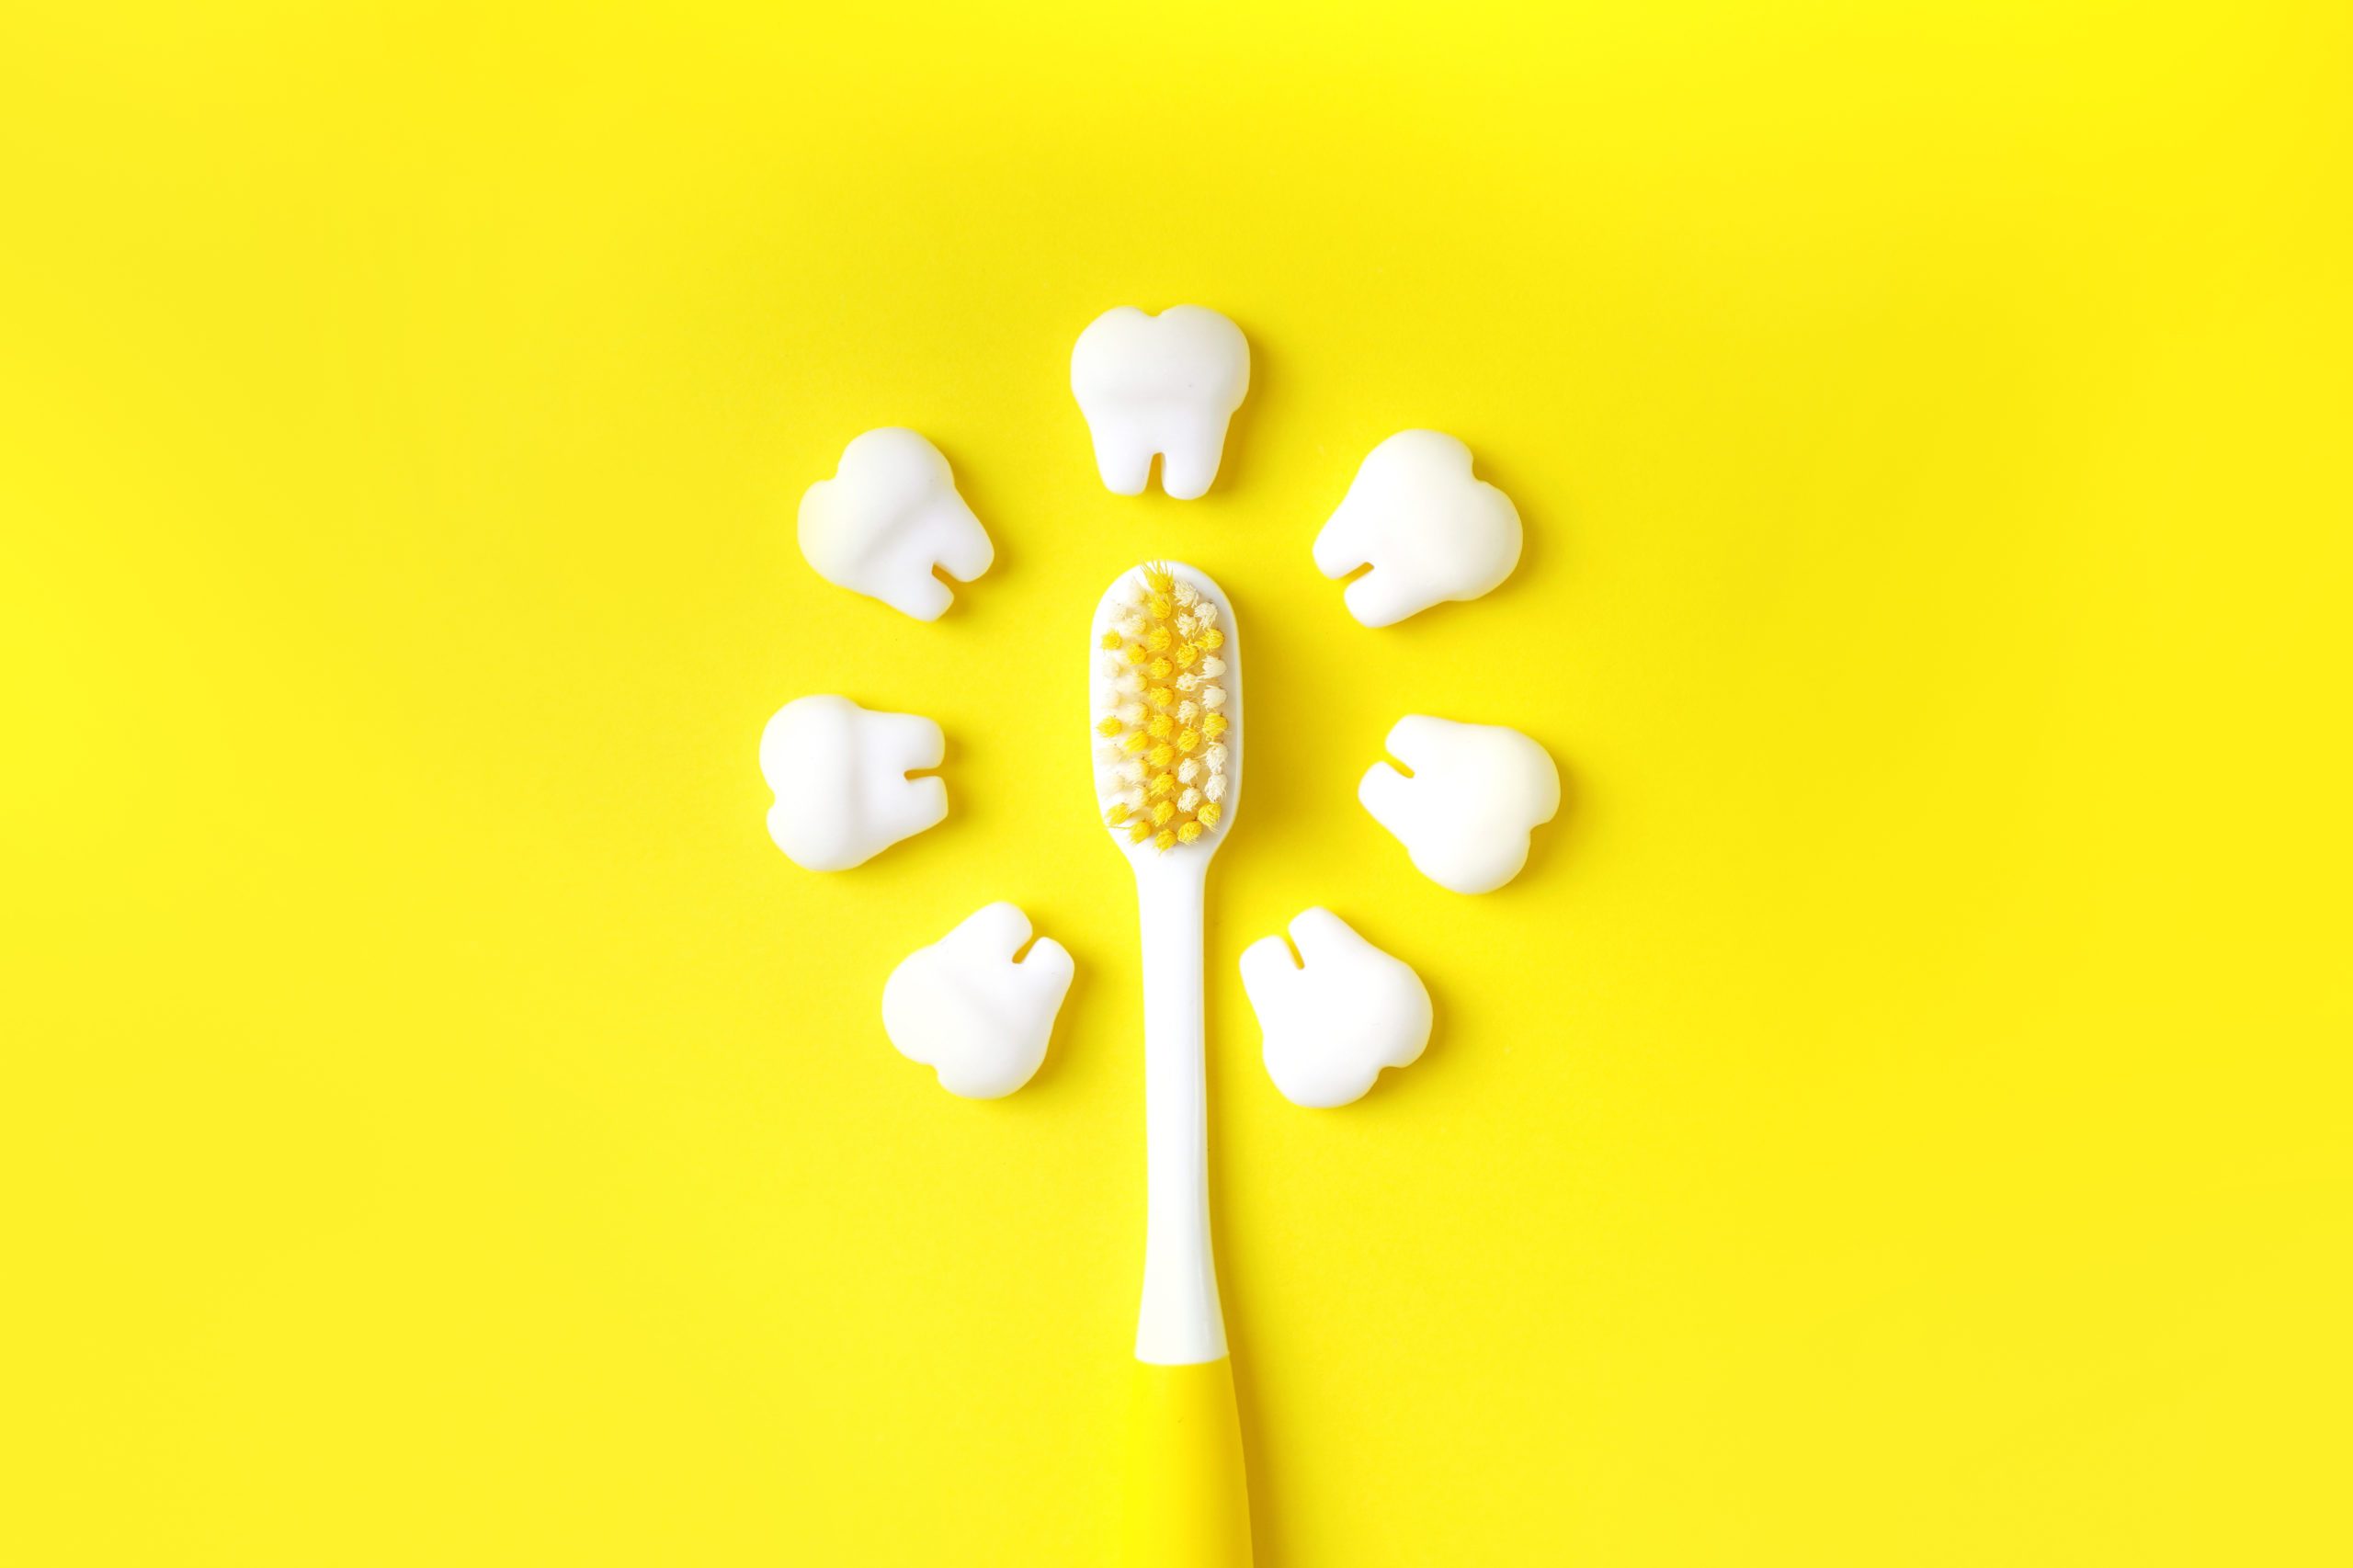 Zahnbürste mit Zähnen Modelle machen Sonne auf einem gelben Hintergrund. Zahnmedizinisches Konzept.